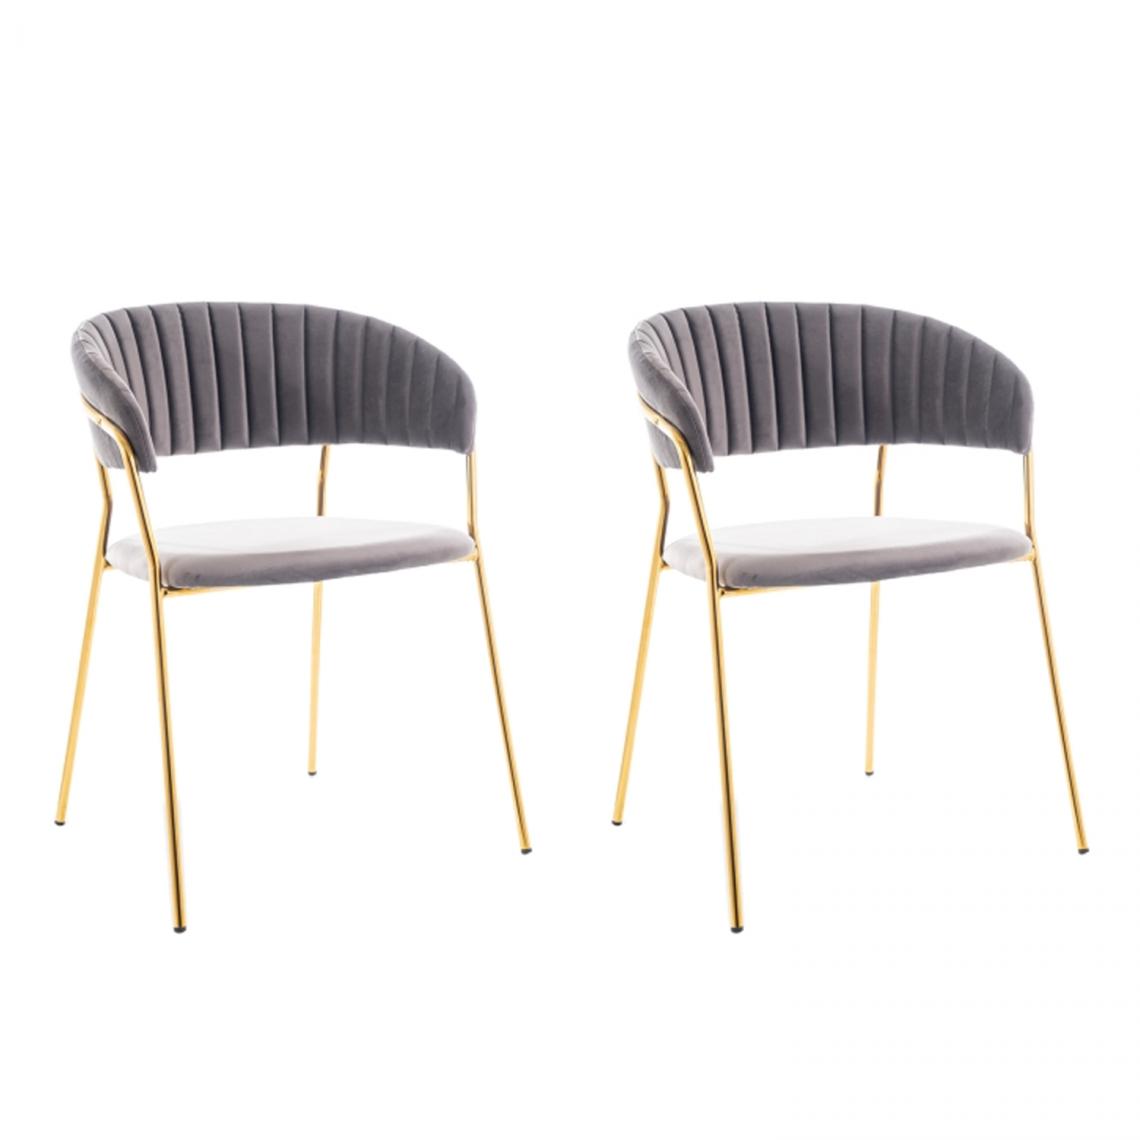 Hucoco - LERA - Lot de 2 chaises glamour - 75x57x52 cm - Tissu vélouté - Cadre en métal - Fauteuil bureau - Gris - Chaises